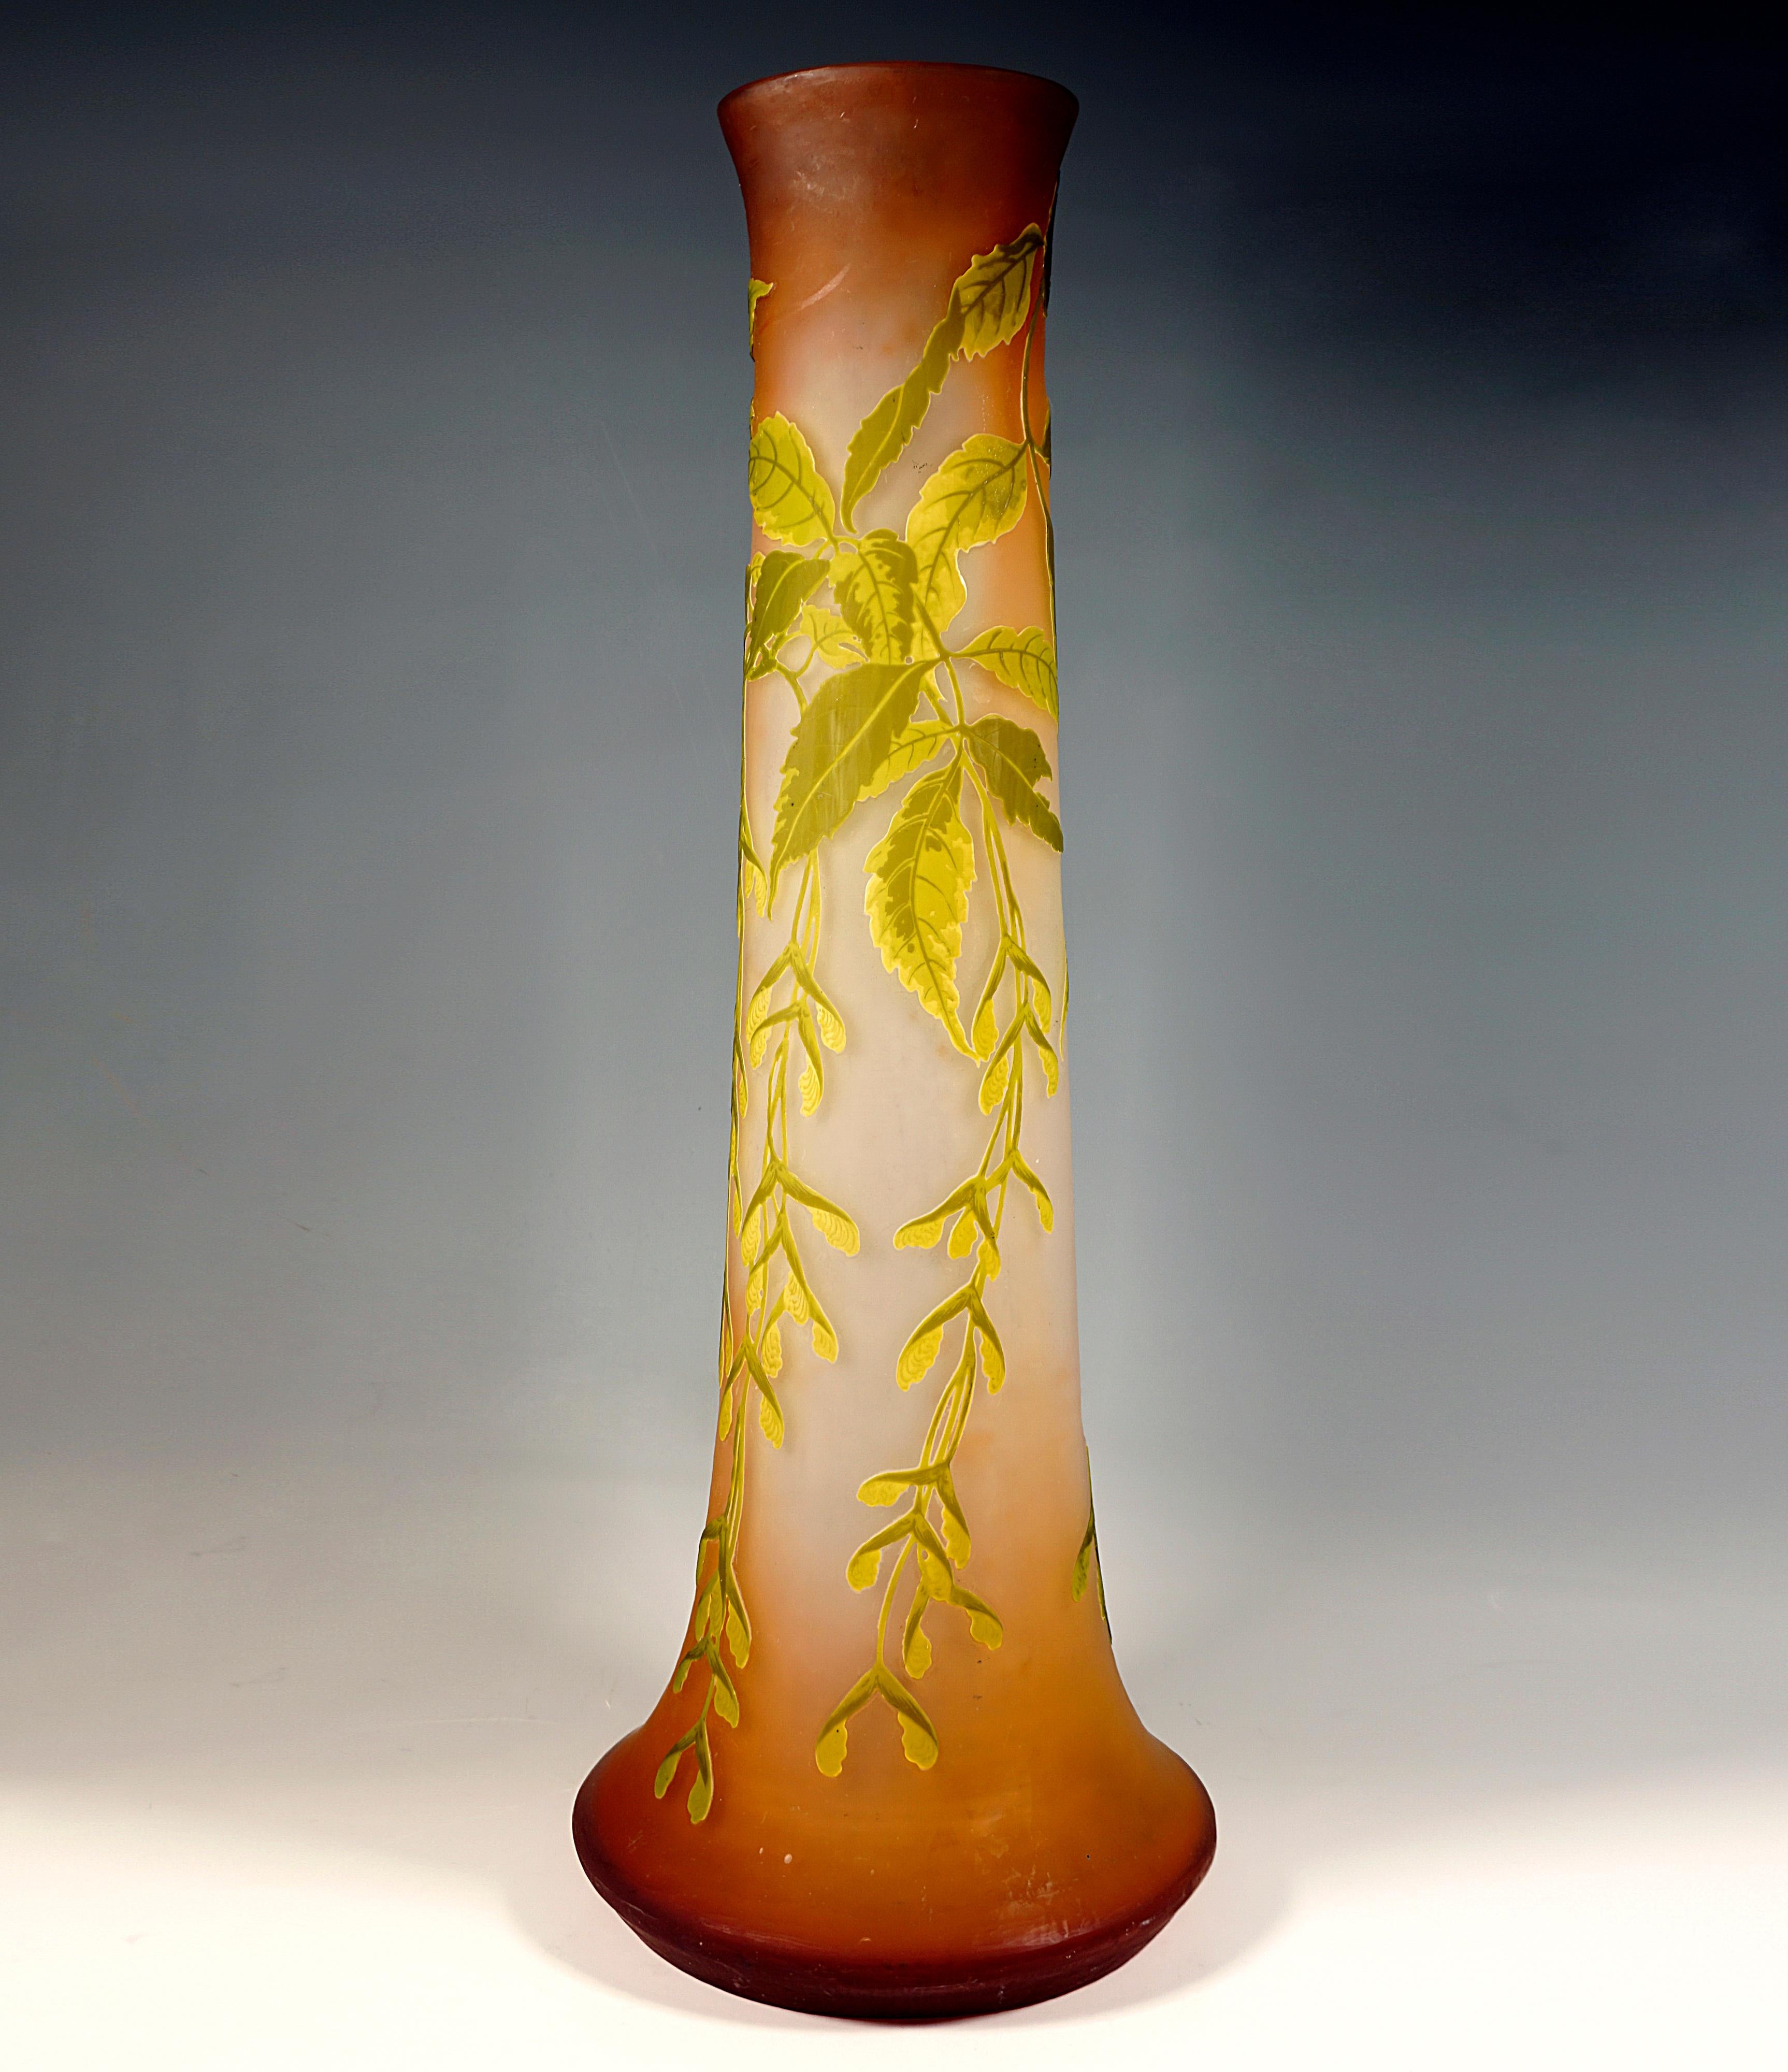 Große Vase auf rundem Standfuß, sich wulstartig verbreiternd und dann leicht konisch verjüngend, langer, breiter Hals, Öffnung mit leicht ausgestelltem Mündungsrand, farbloses Glas mit orange-braunen Farbpulvereinschmelzungen, Überfang in Gelb und